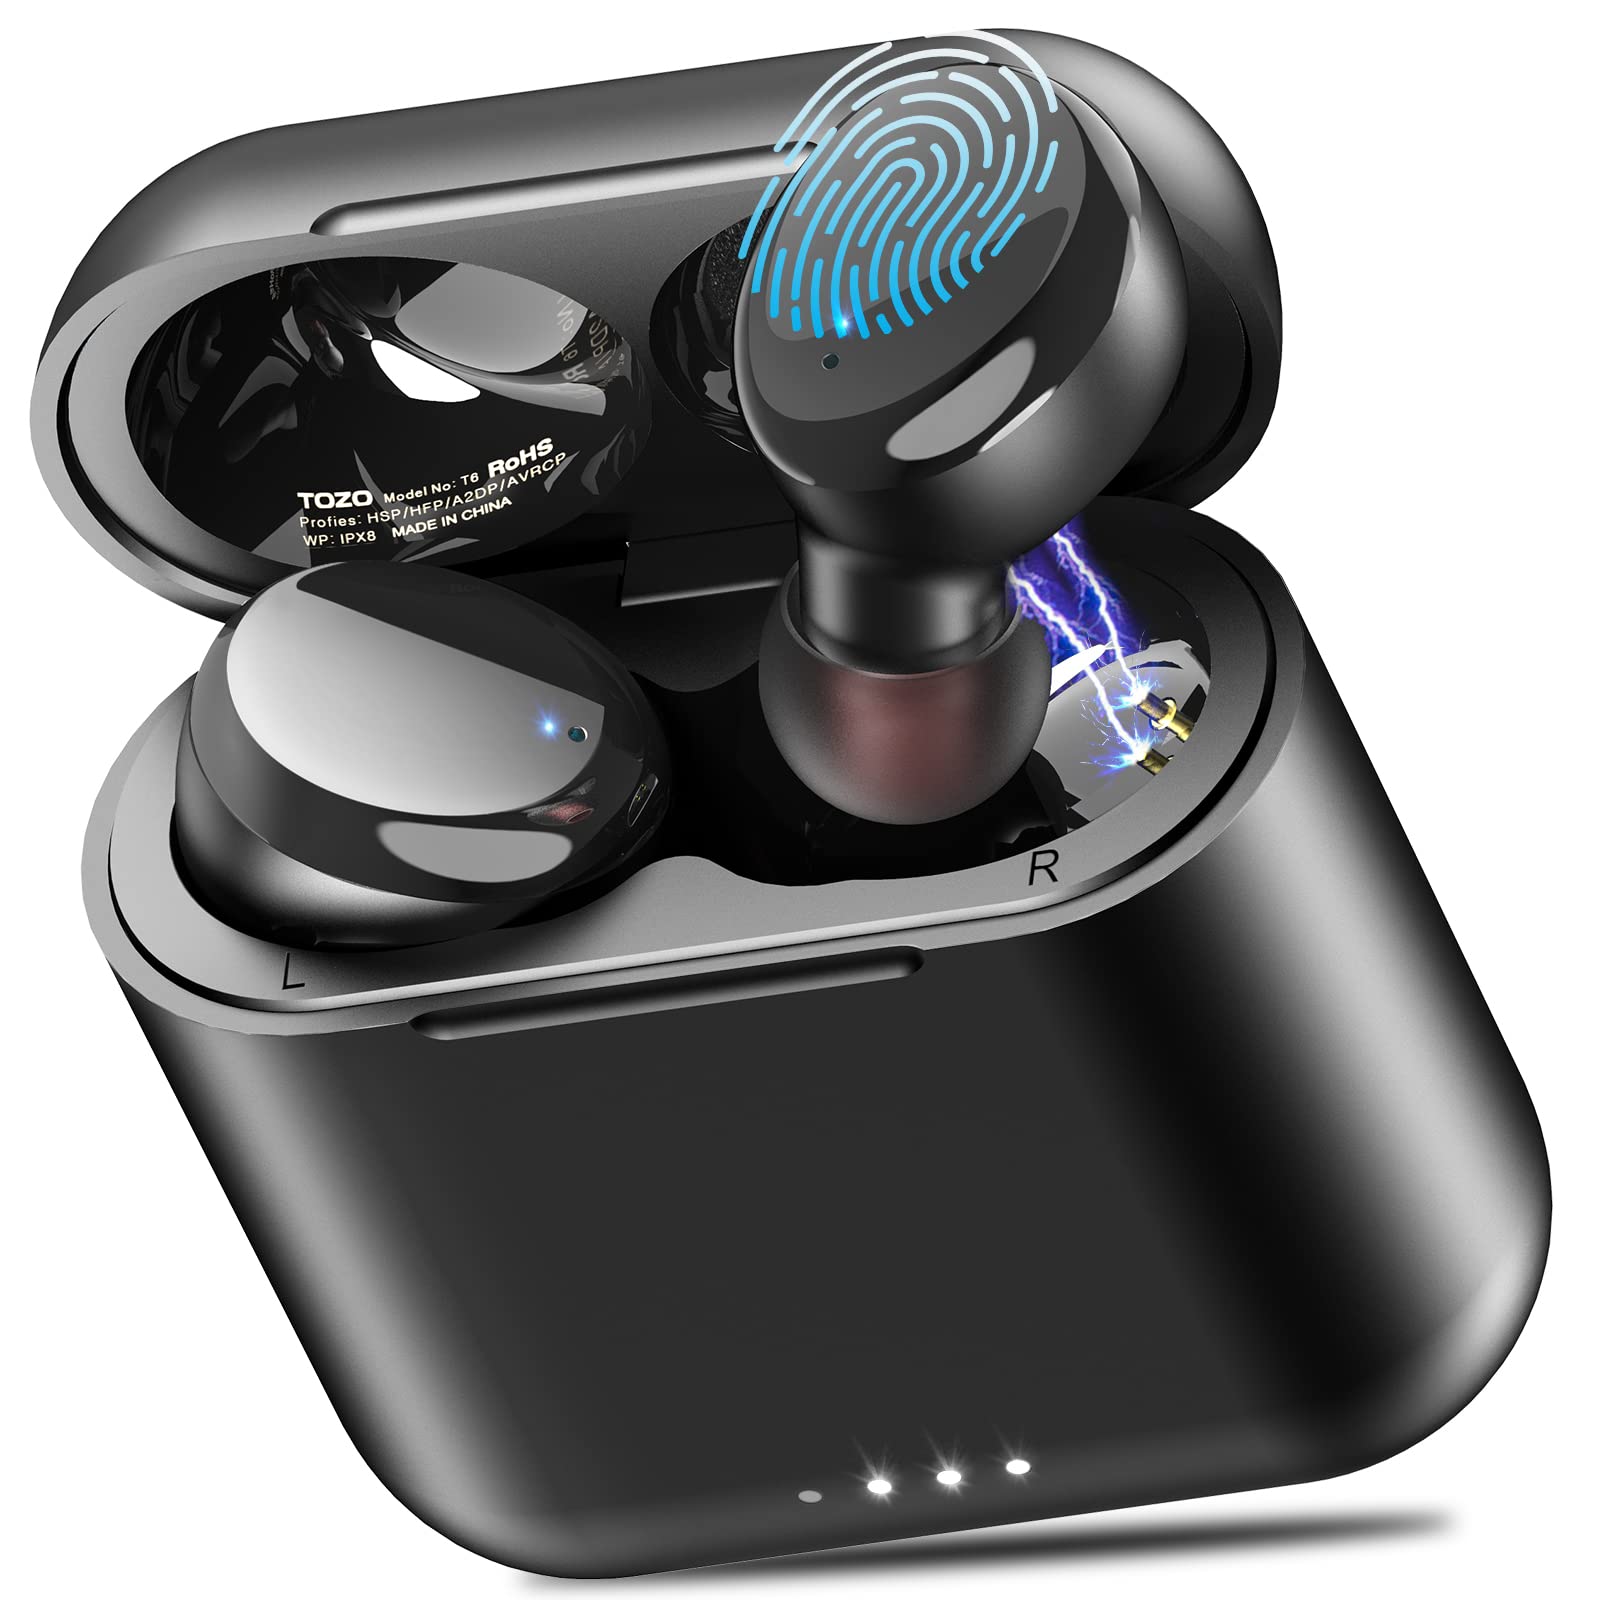 TOZO T6 真无线耳塞式蓝牙 5.3 耳机触摸控制带无线充电盒 IPX8 防水立体声耳机入耳式内置麦克风耳机优质深沉低音适合运动黑色